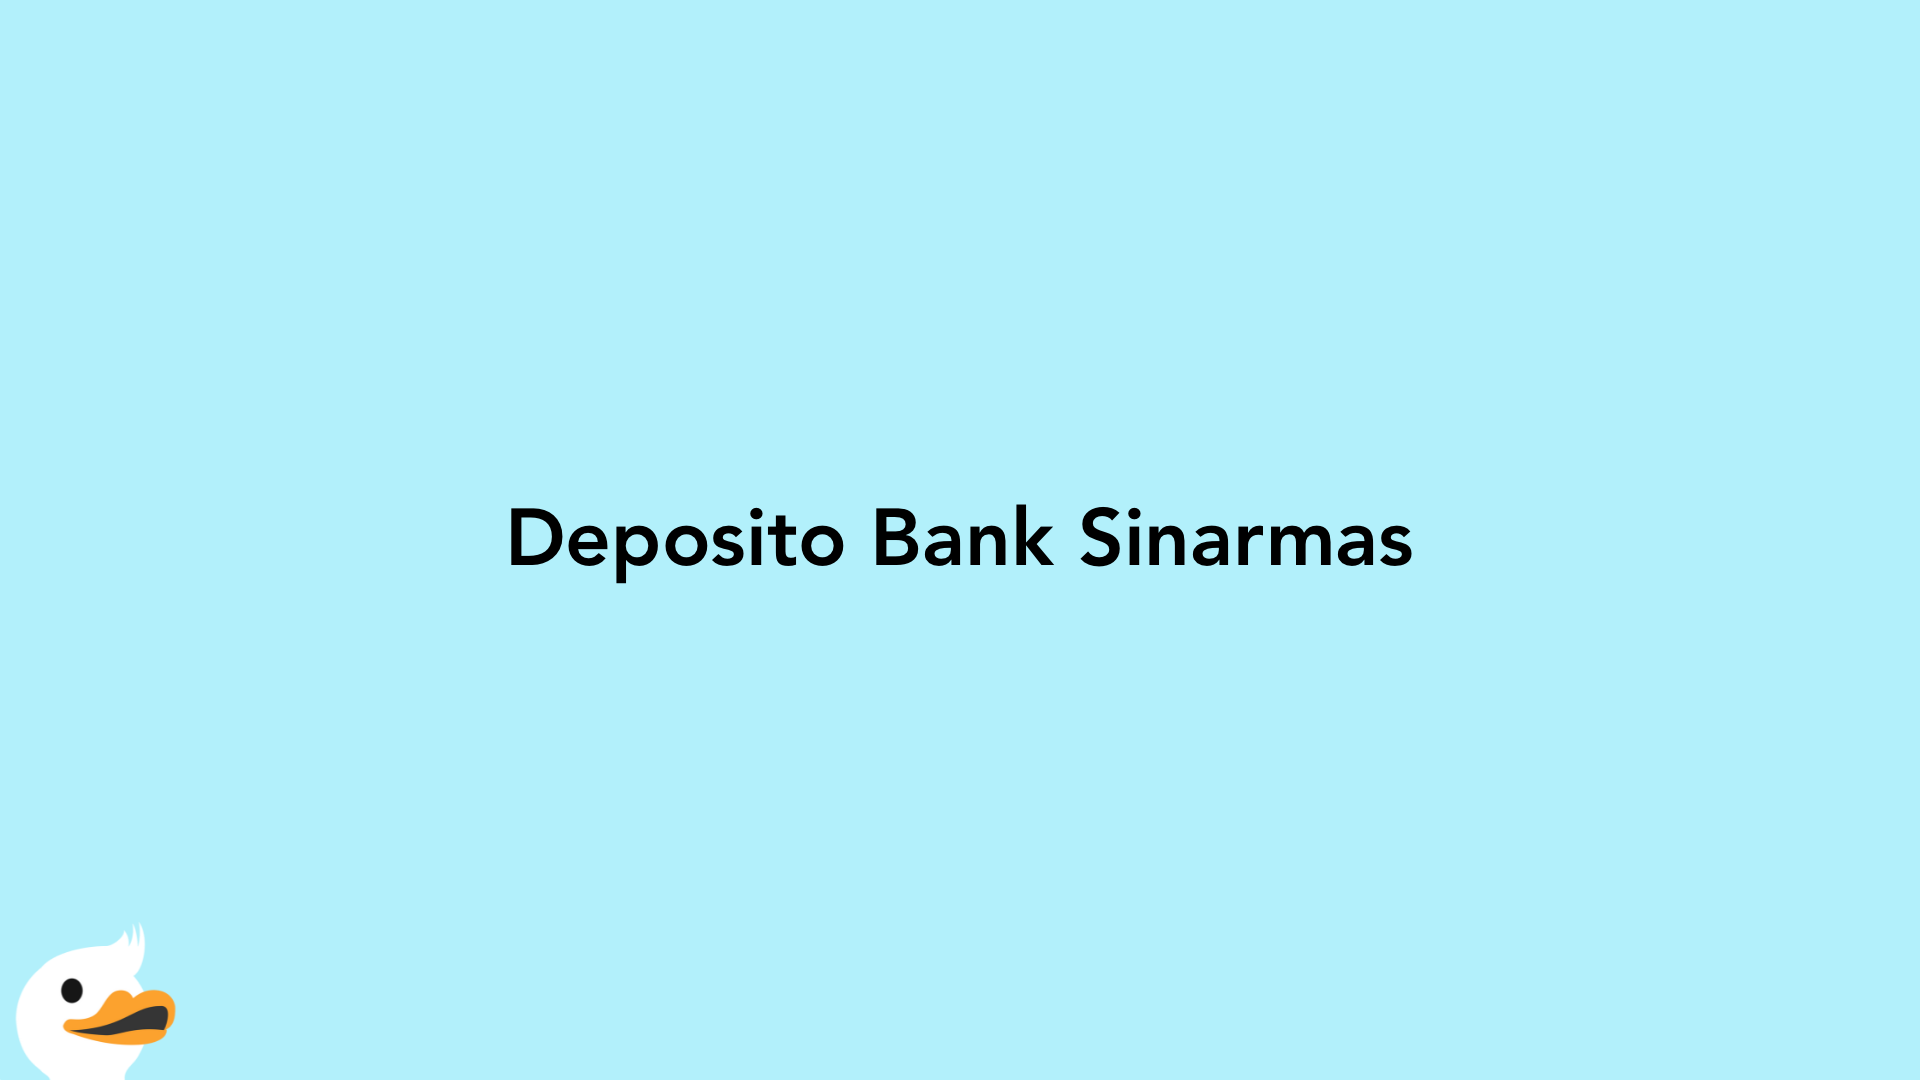 Deposito Bank Sinarmas